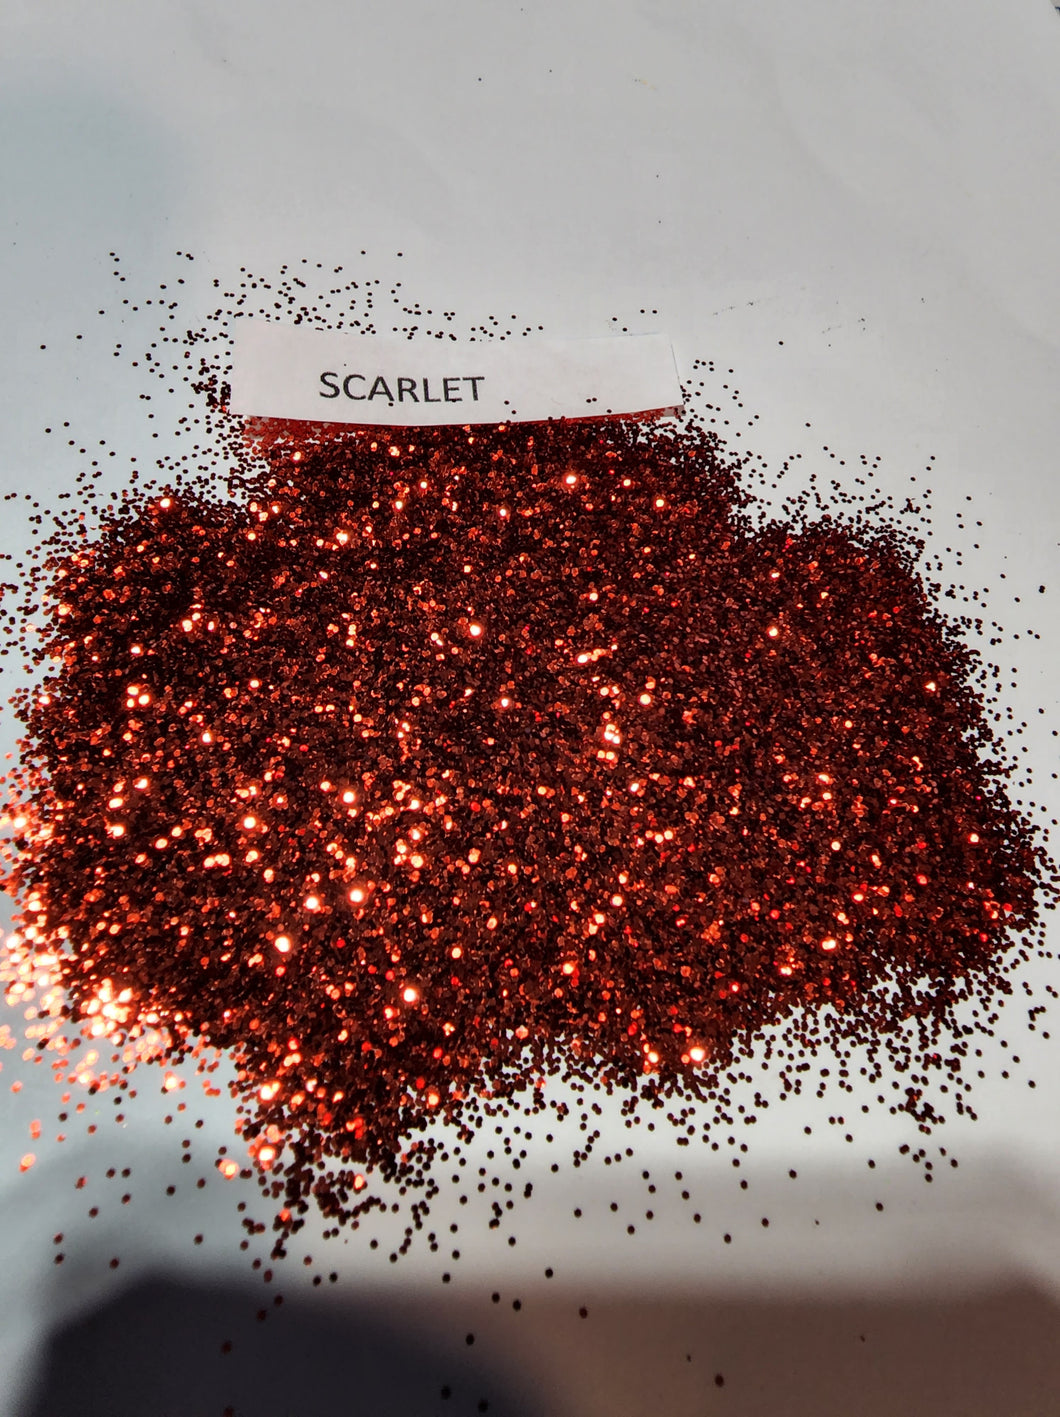 Scarlet 1/40